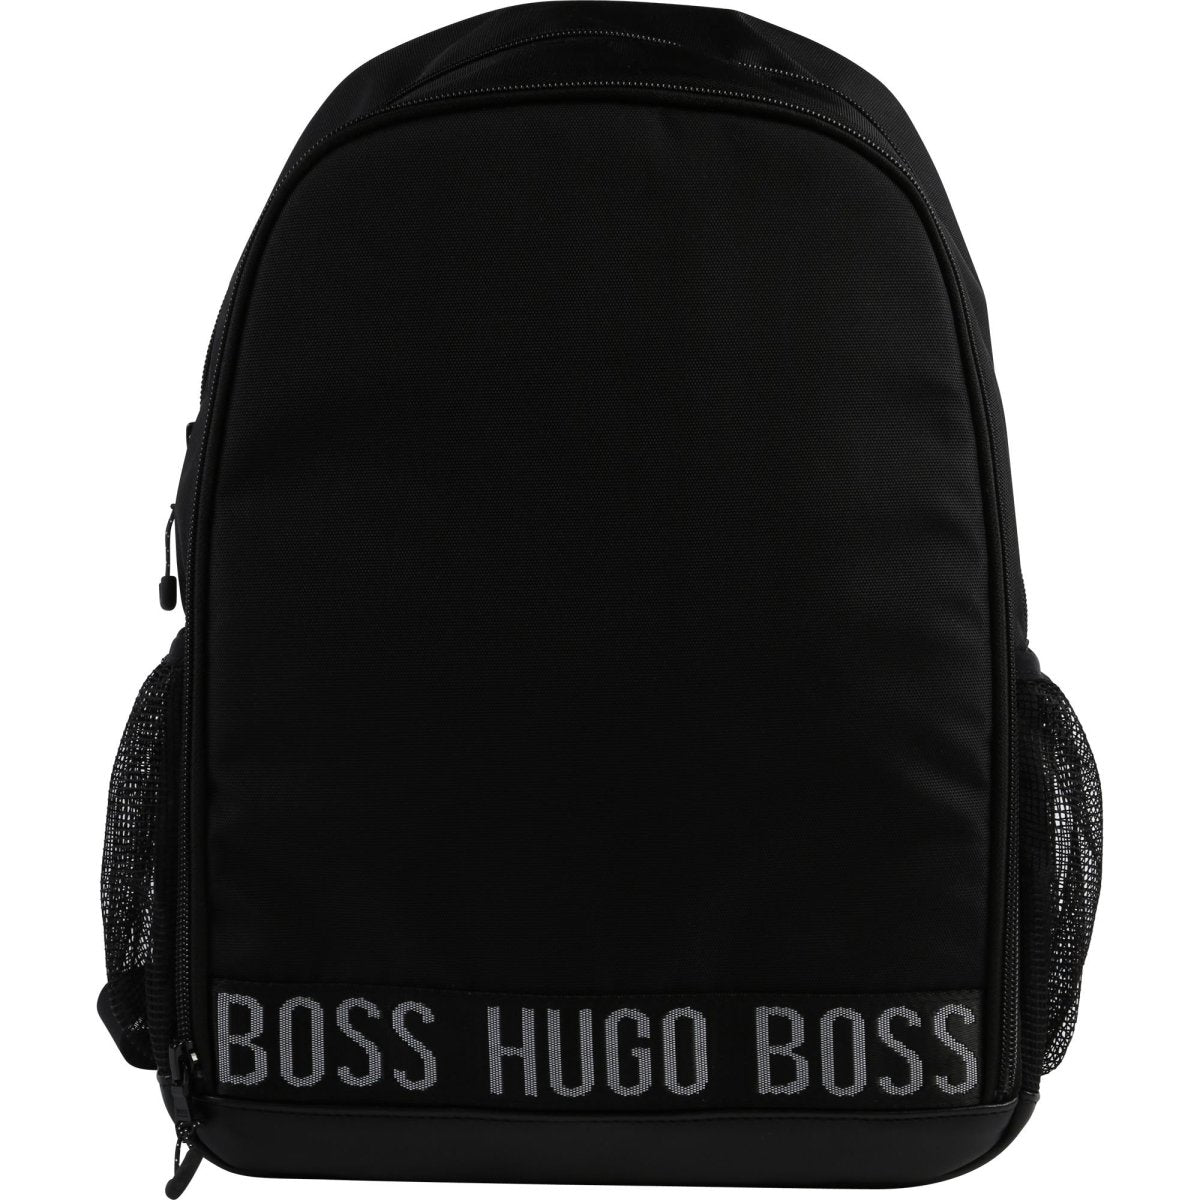 Hugo Boss Boys Backpack J20244 Accessories Hugo Boss 